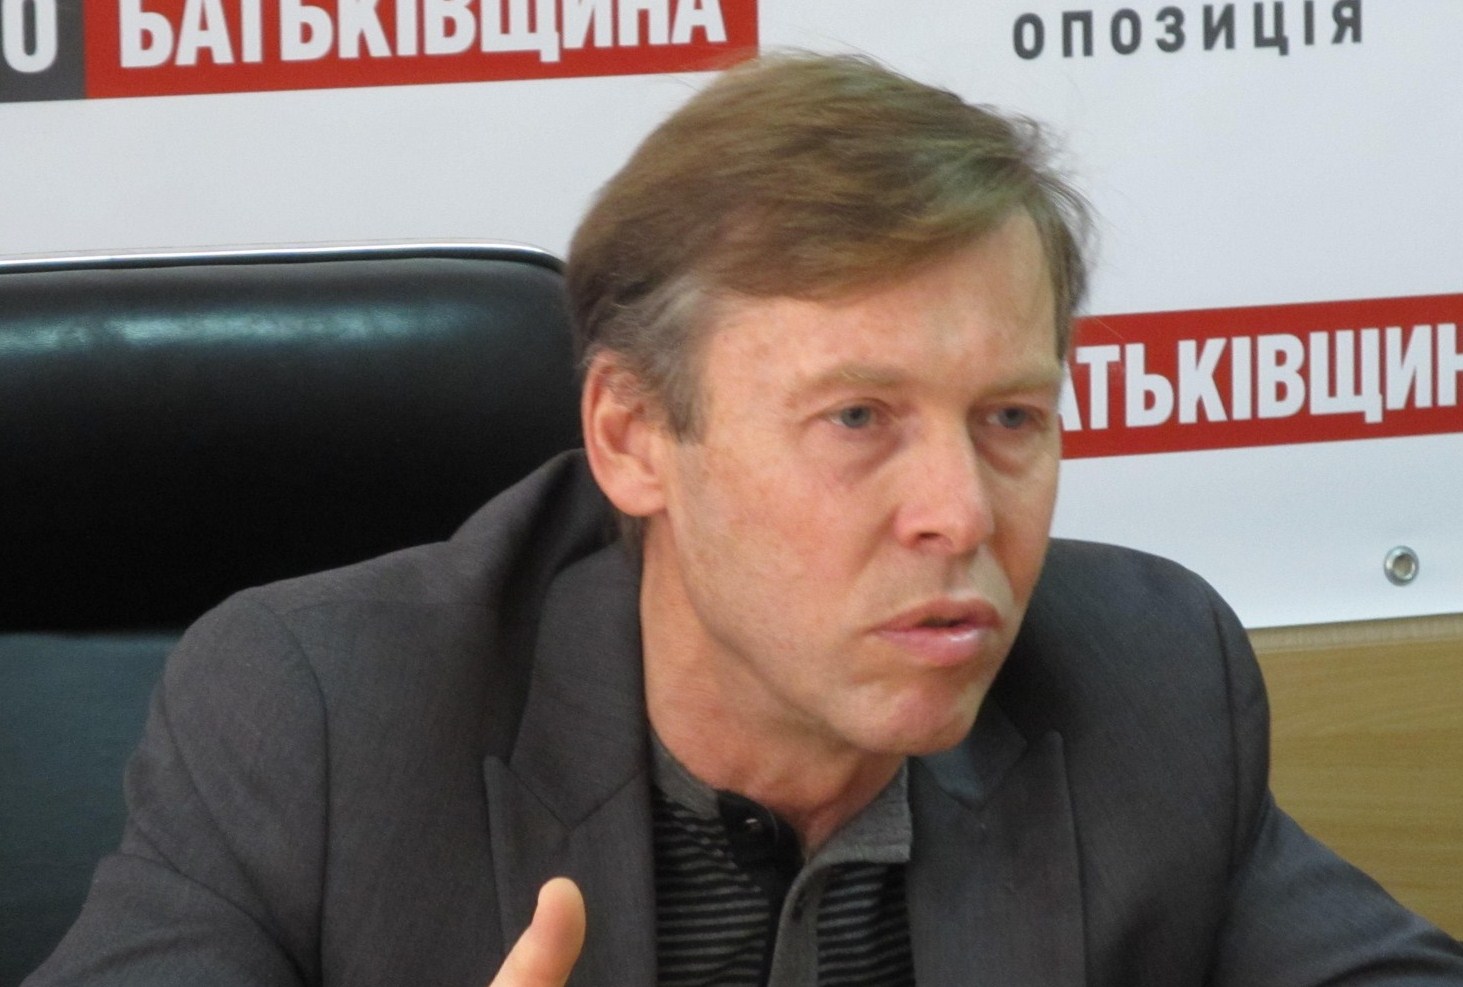 "Эта женщина не с нами!" - Соболев попросил не отождествлять высказывания Савченко с позицией "Батькивщины"